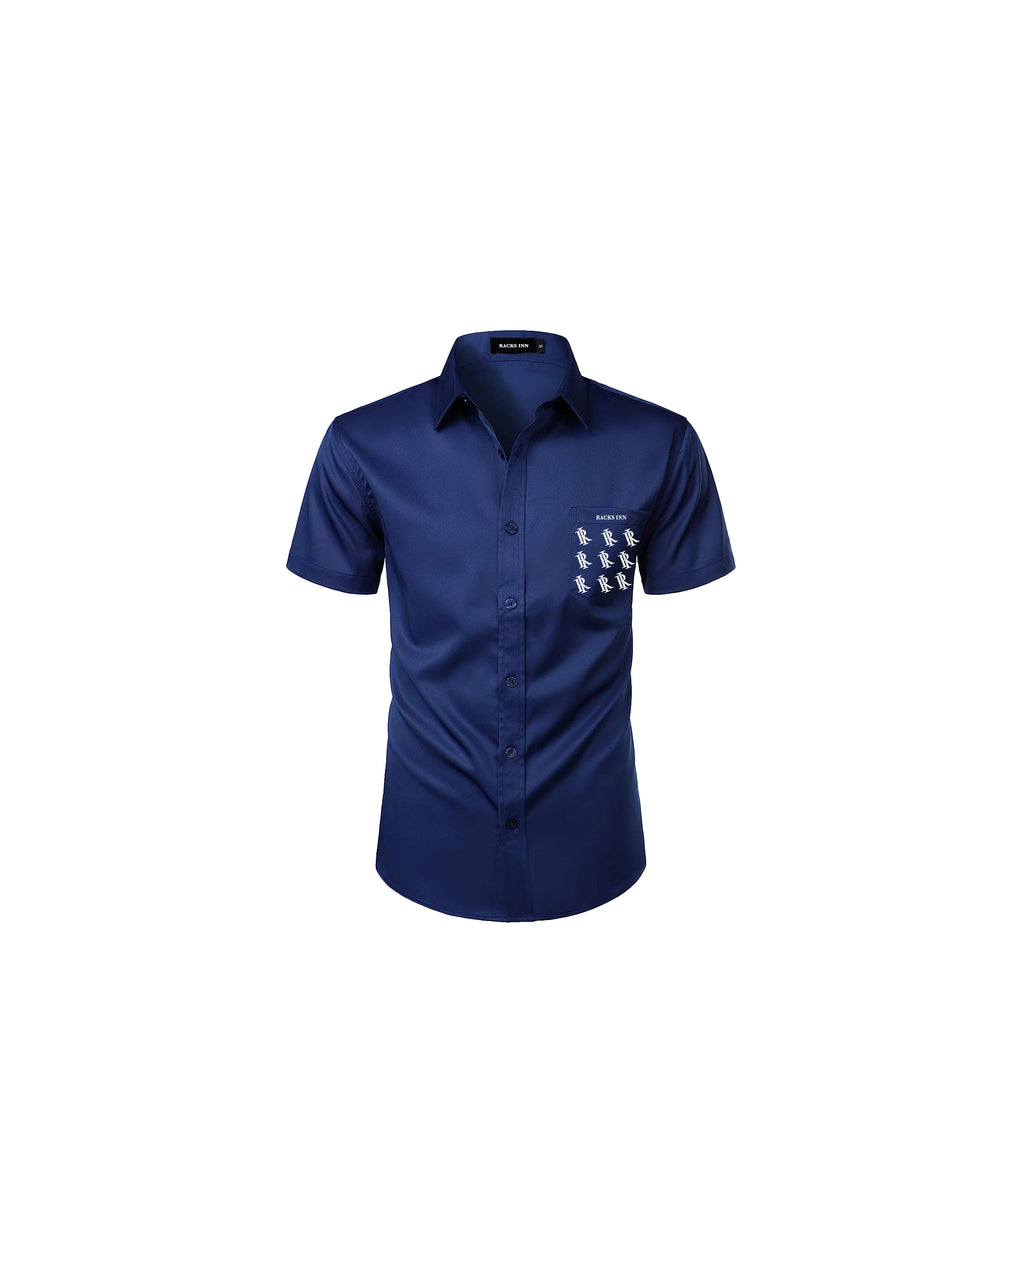 Monogram Graphic Casual Shirt - Navy